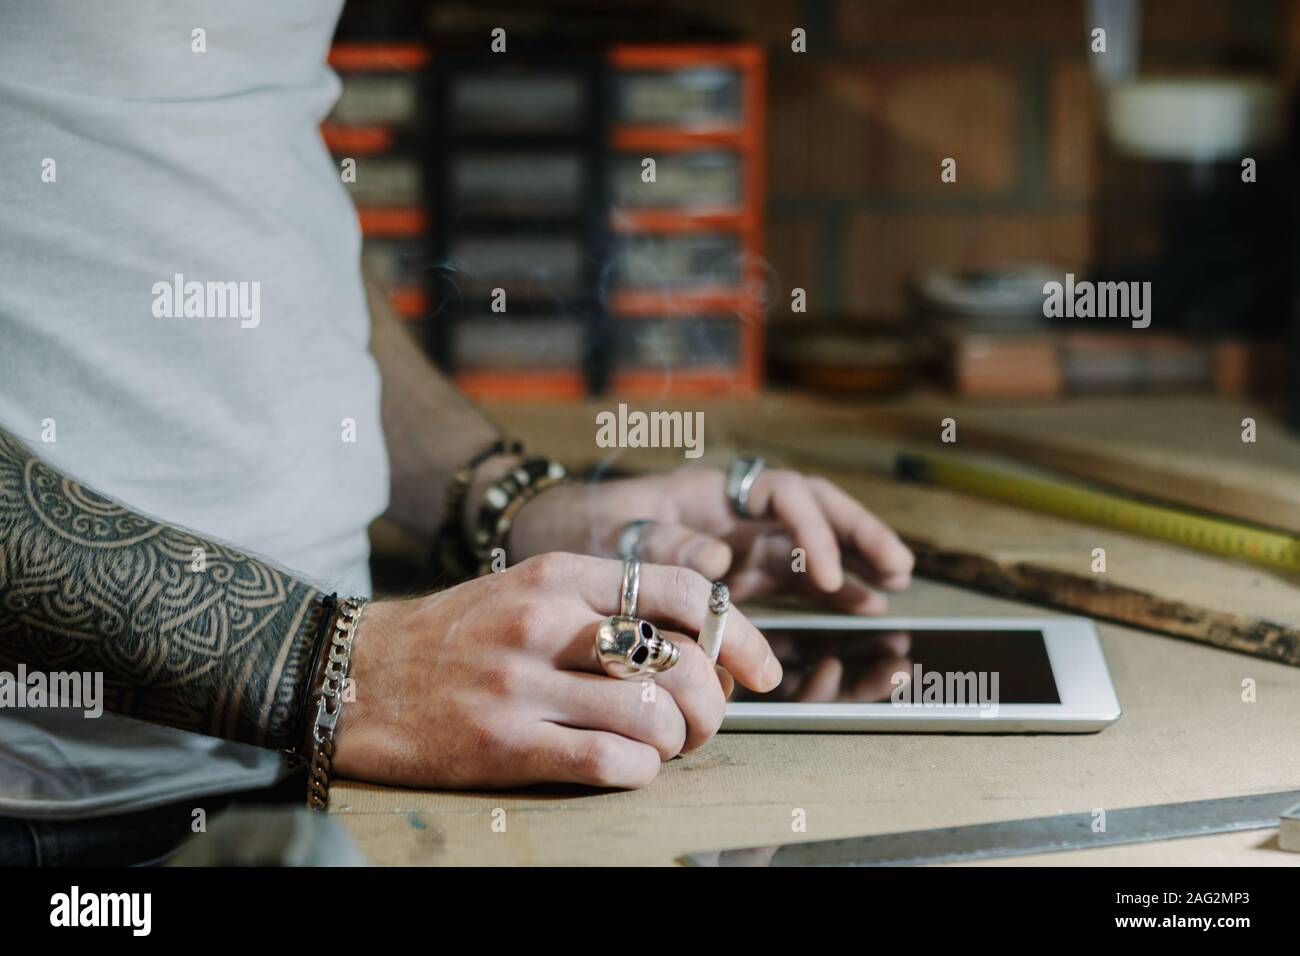 Handwerker Künstler in einer Tablette und einige Ideen für einen neuen Designer Holz- Produkt aus seinem Hause Werkstatt beim Rauchen einer Zigarette Stockfoto